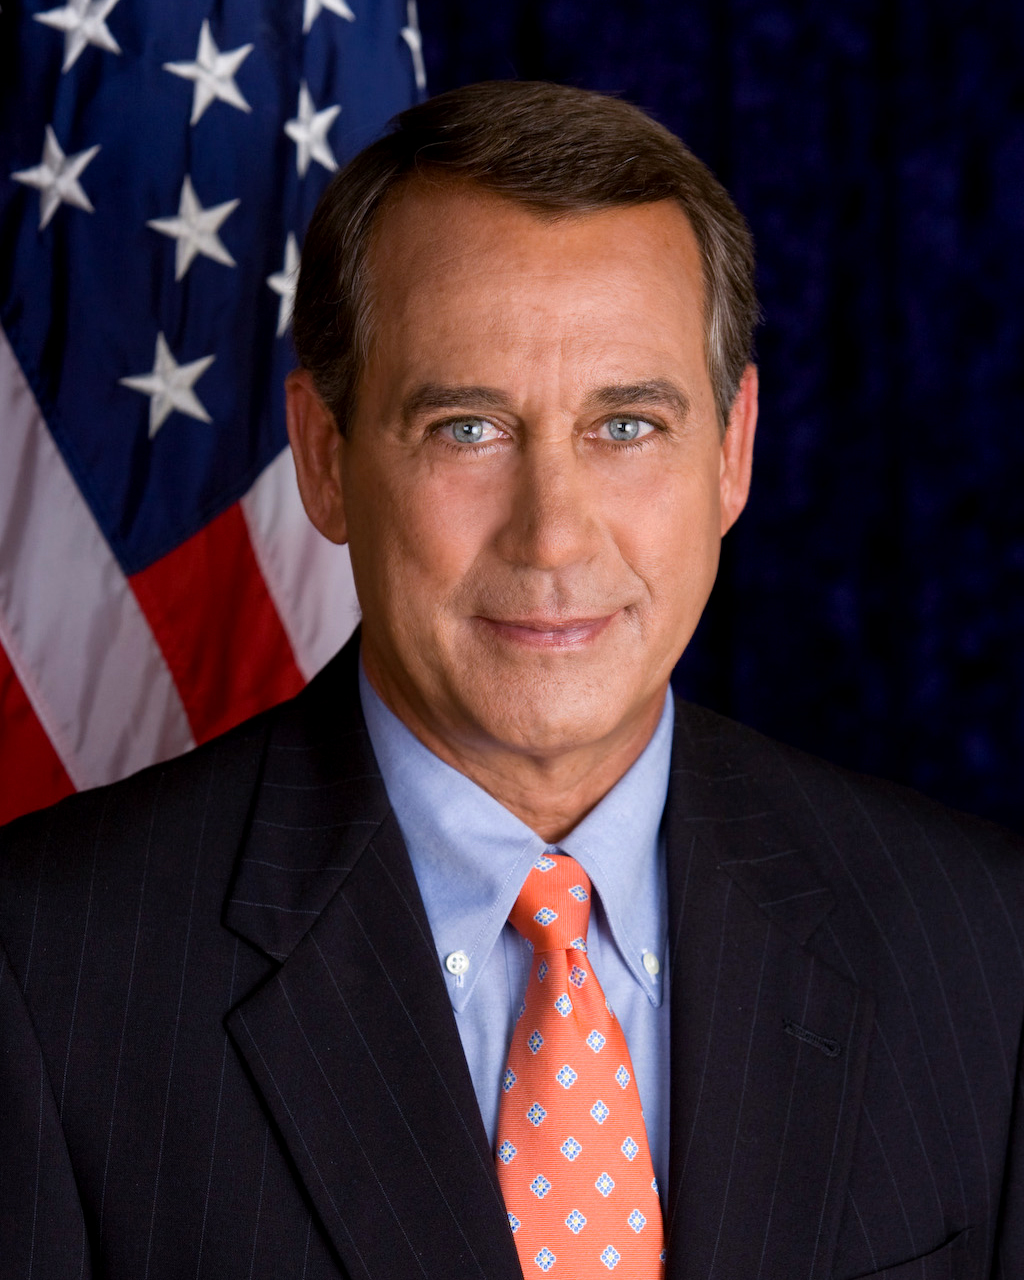 File:John Boehner official portrait.jpg - Wikimedia Commons